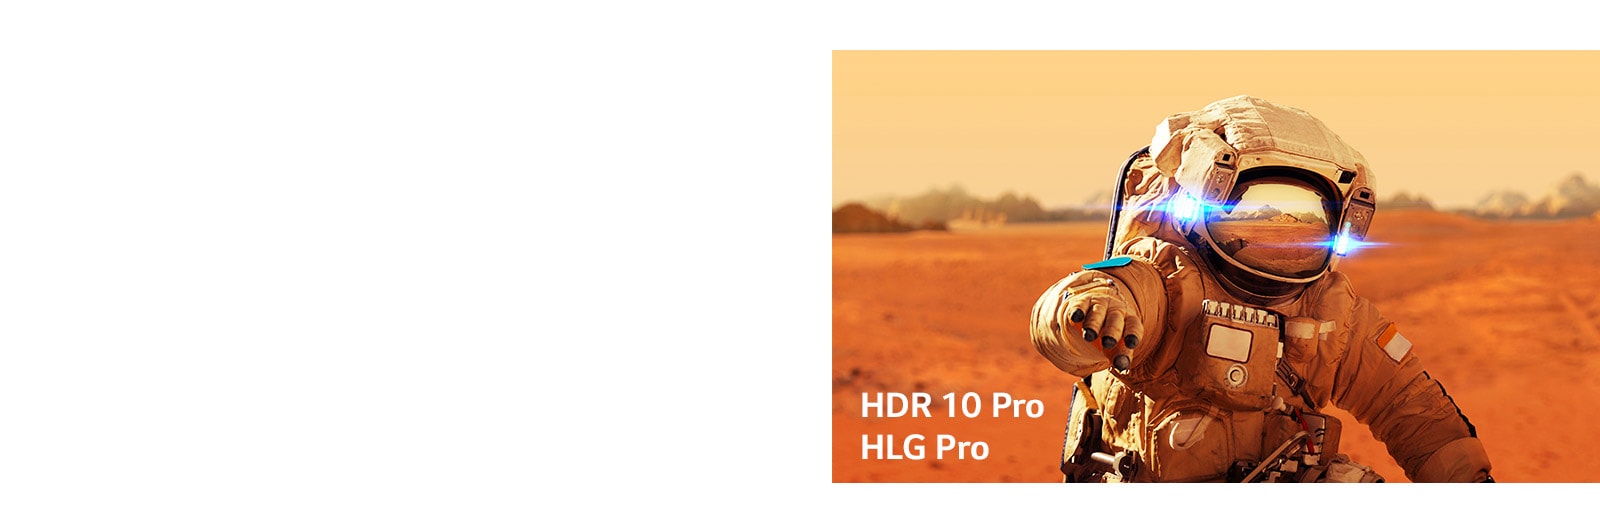 Schede del titolo per il film Marvel Iron Man con i loghi HLG Pro e HDR 10 Pro